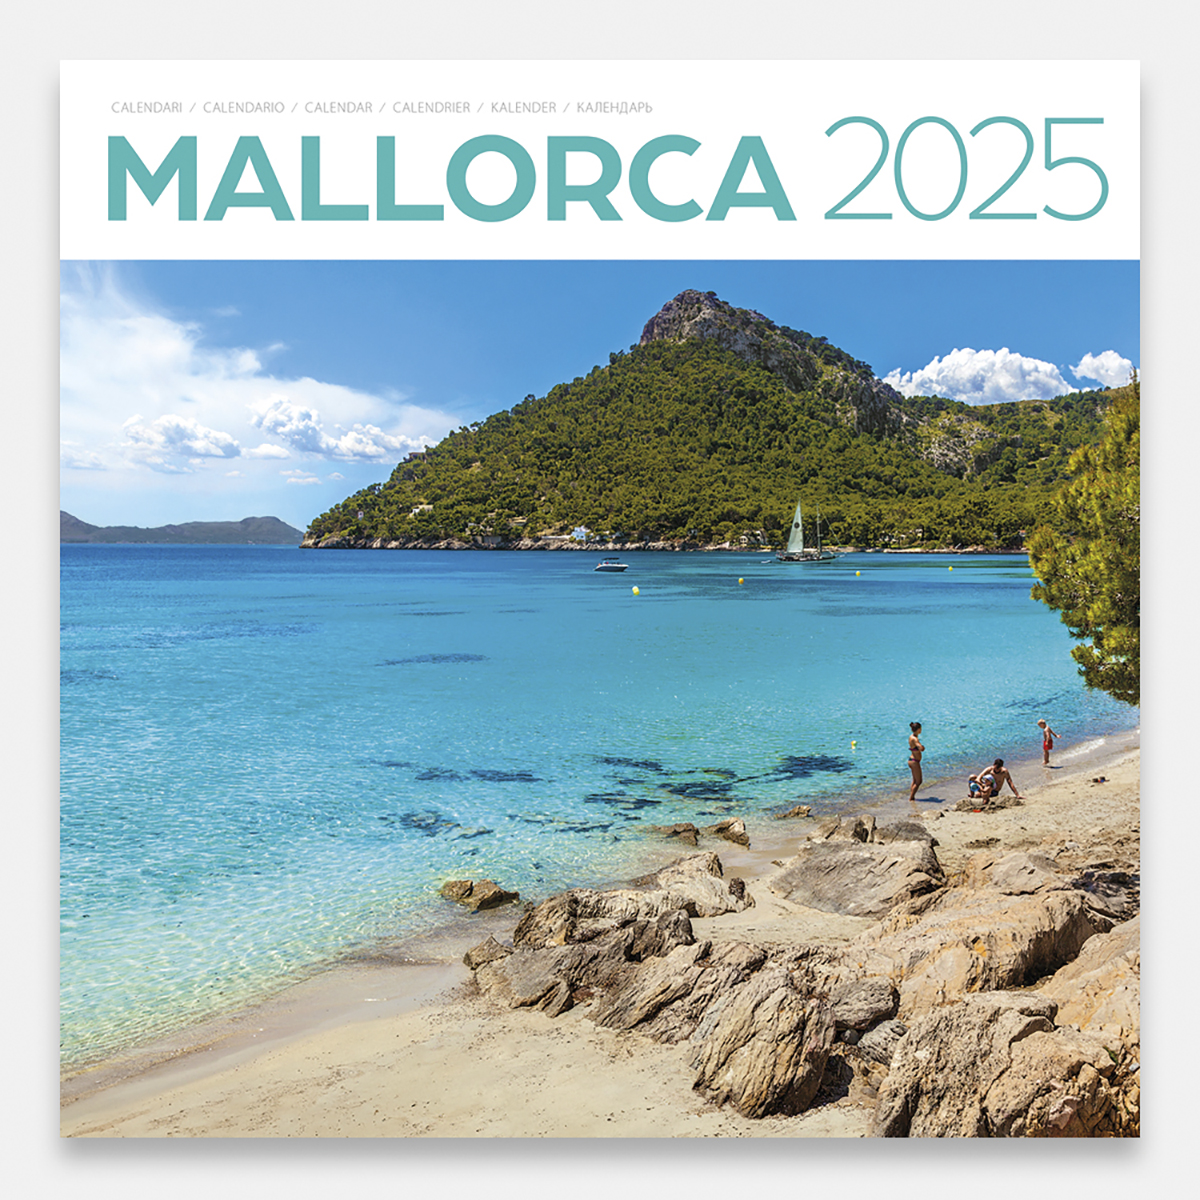 Calendar 2025 Mallorca 25mag1 calendario pared 2025 mallorca